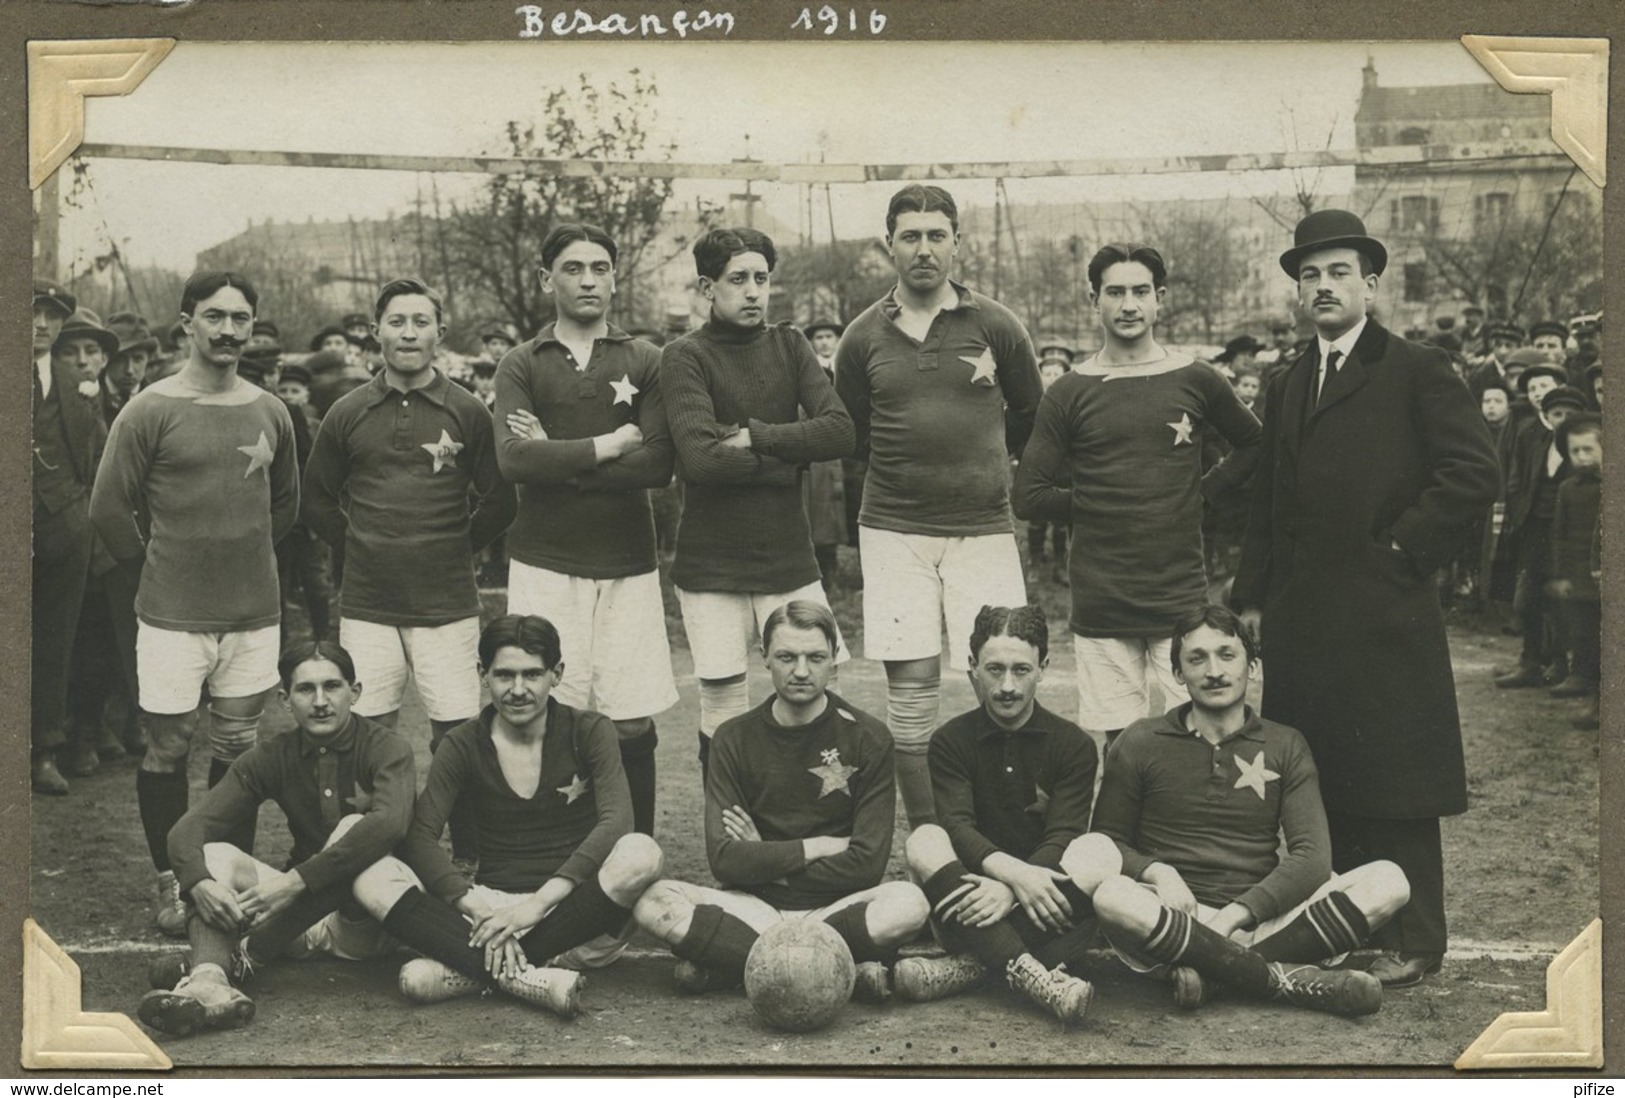 Carte Photo D'une équipe De Football Légendée "Besançon 1916". Equipe De Paris ? (Etoile , EDL). - Fútbol